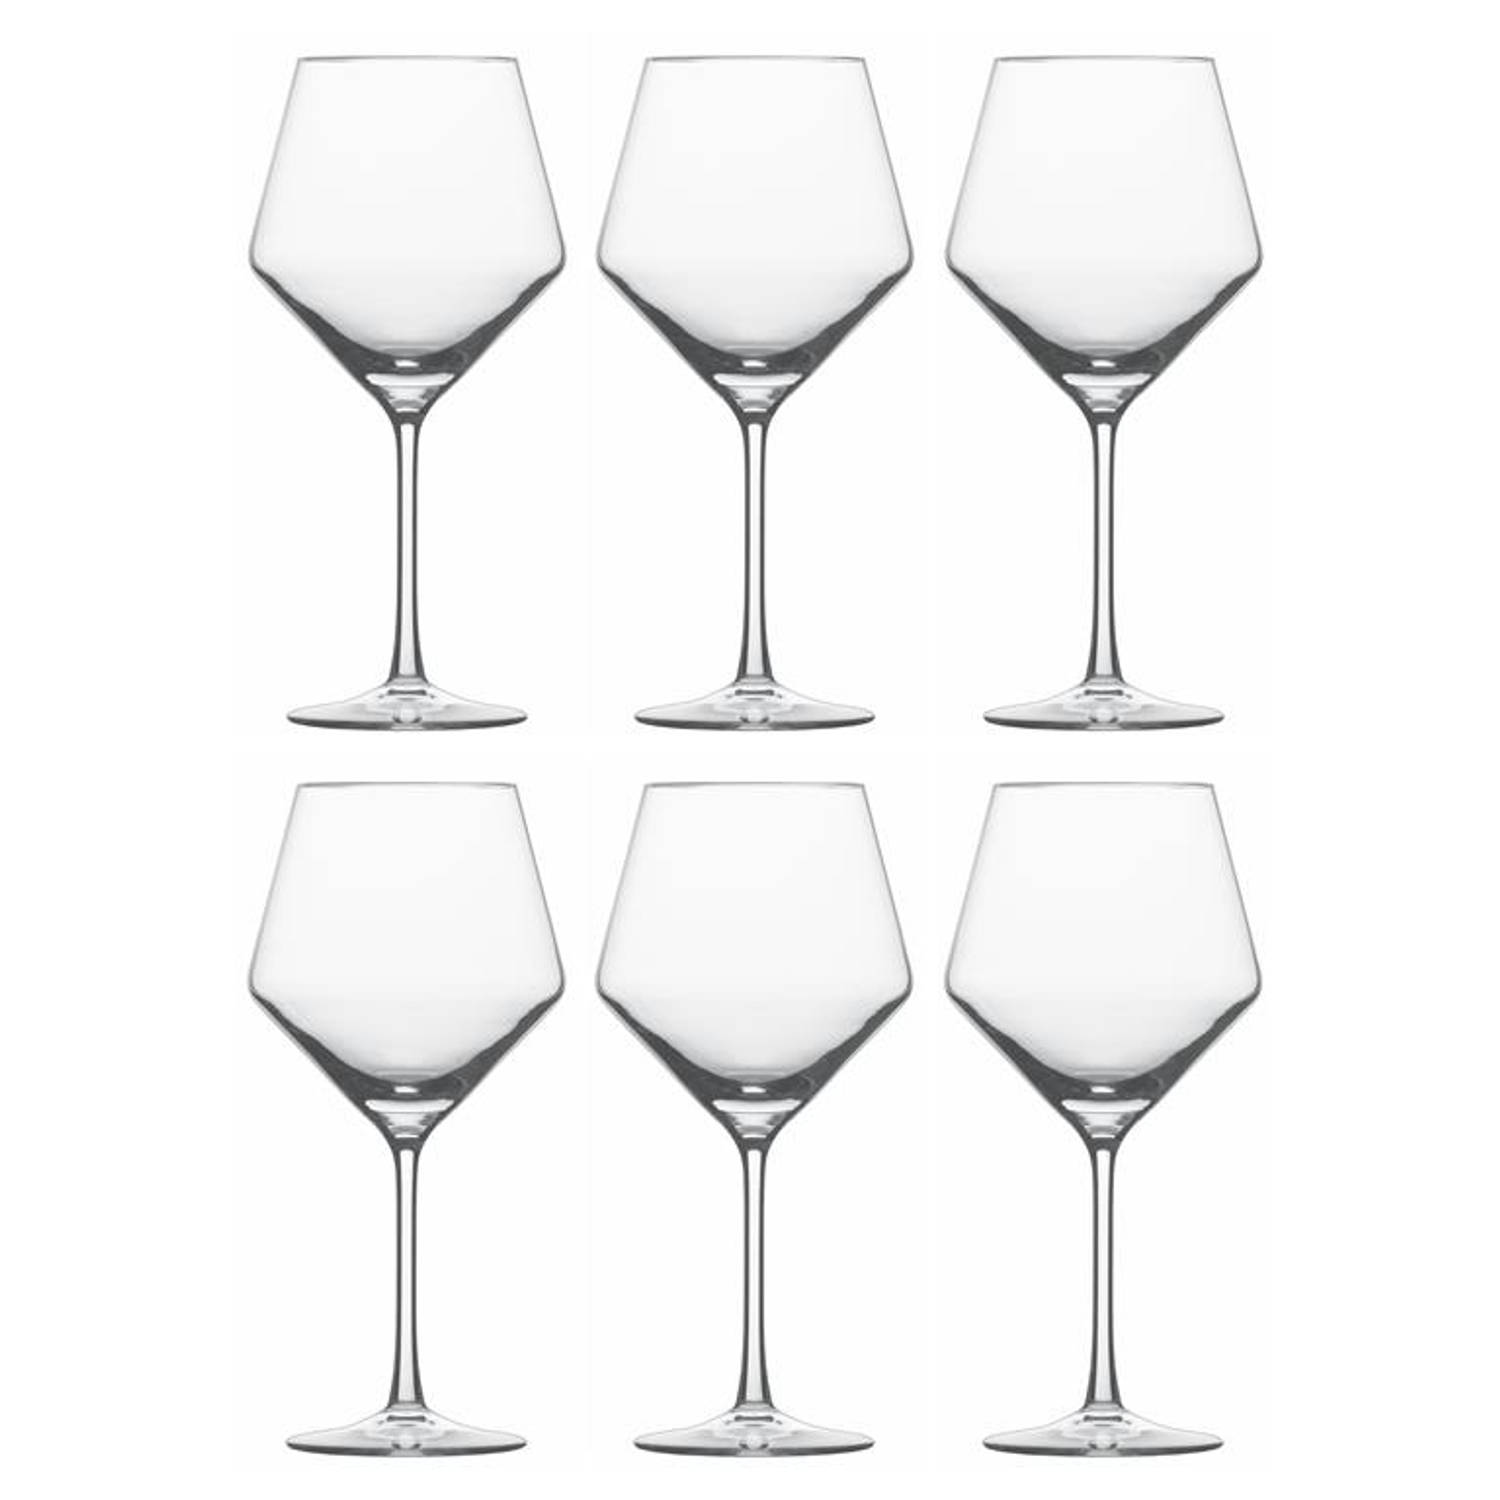 Schott Zwiesel - Pure Bourgogne goblet 0,692L 6 stuks